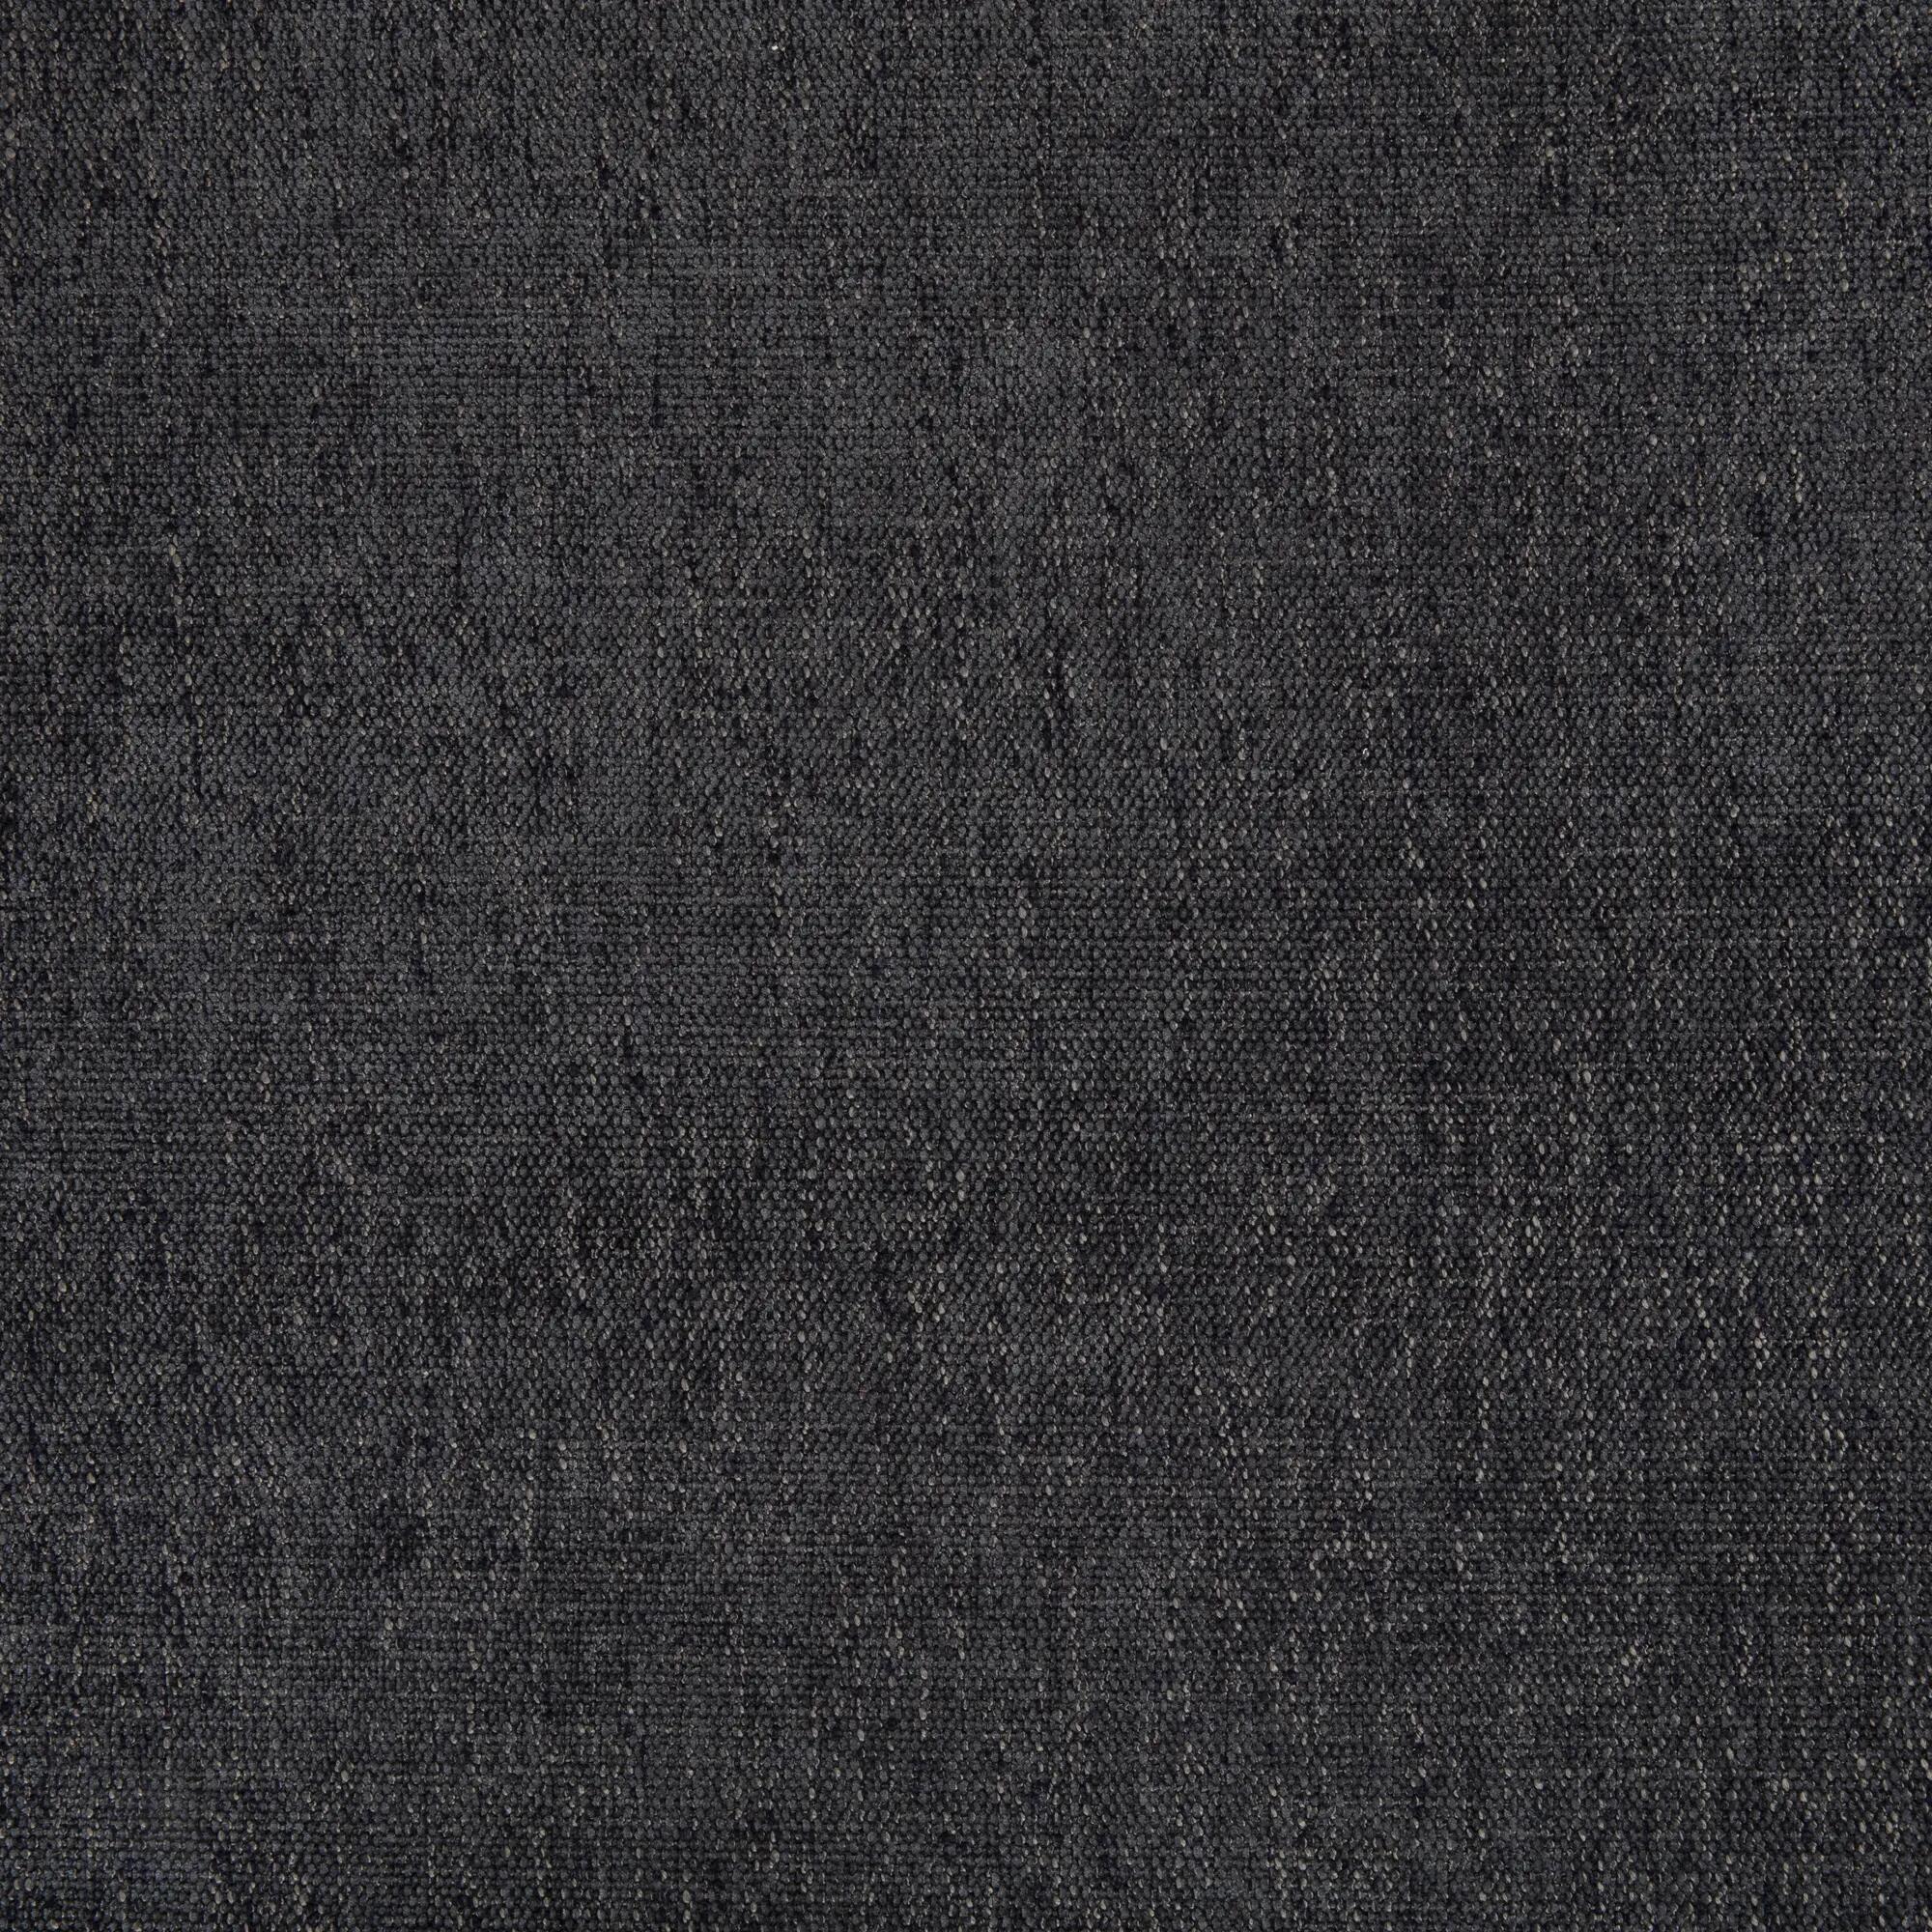 Tela al corte tapicería chenilla saima carbón ancho 140 cm